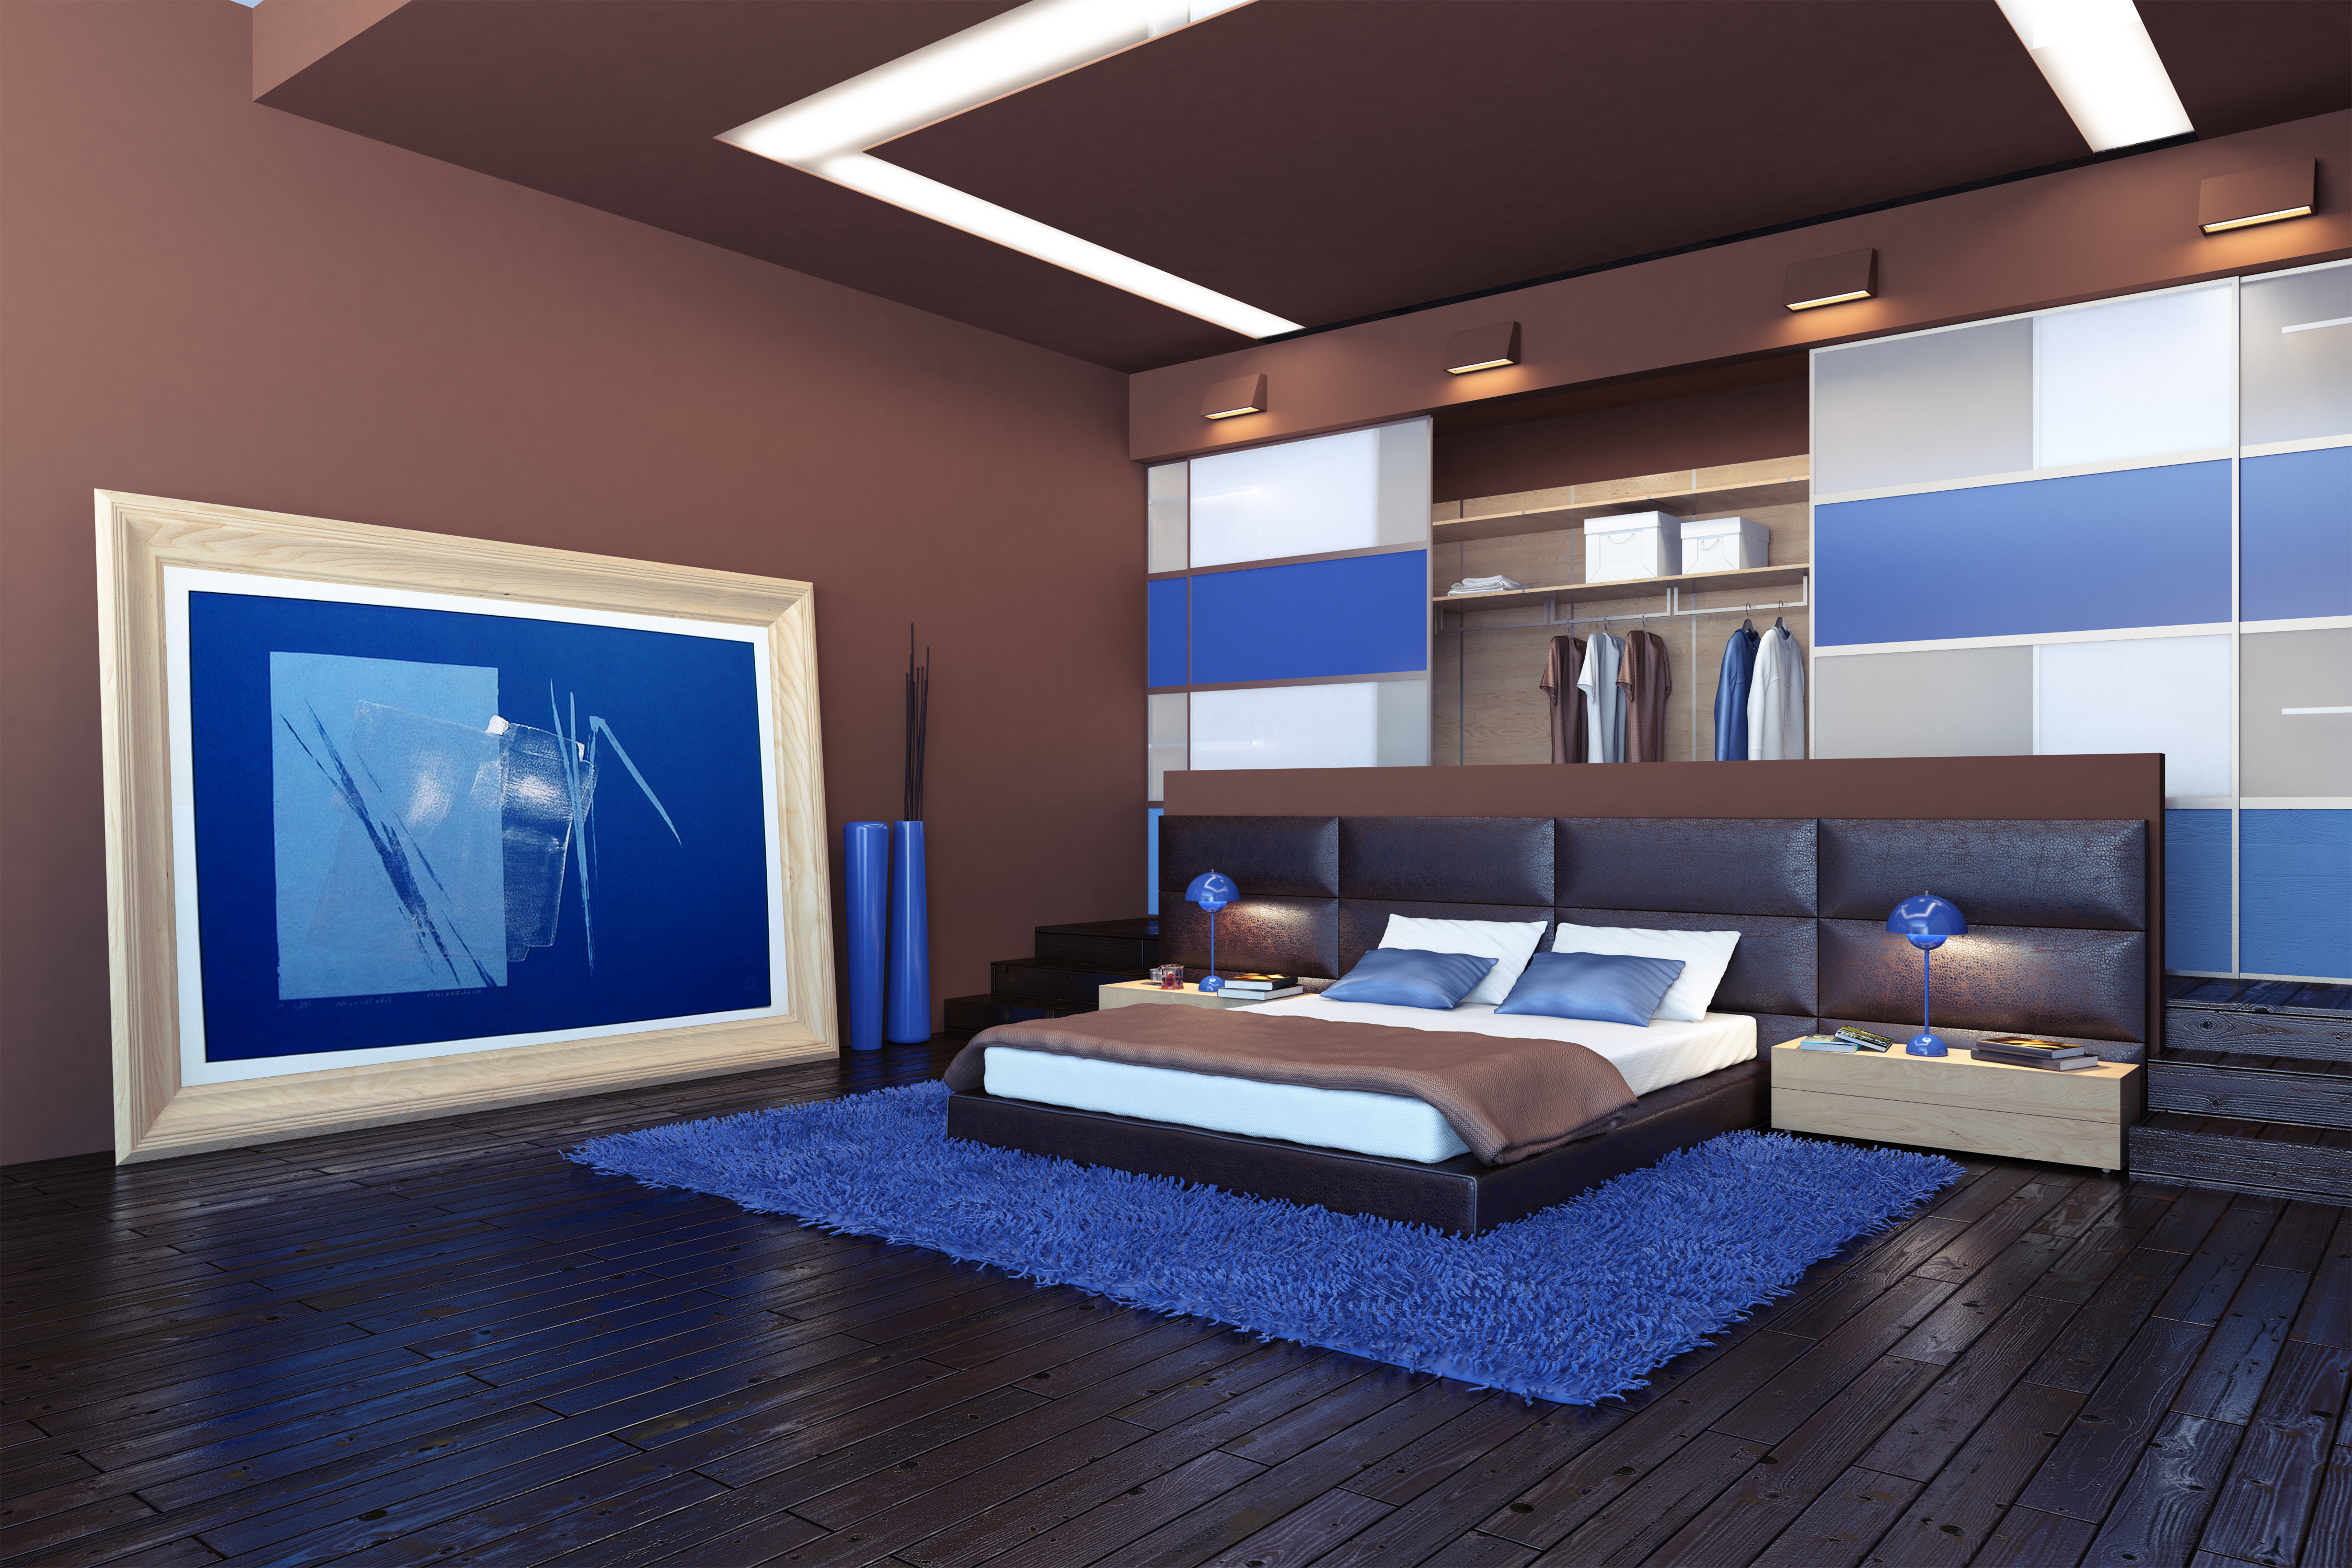  спальня дизайн фото » Современный дизайн на Vip-1gl